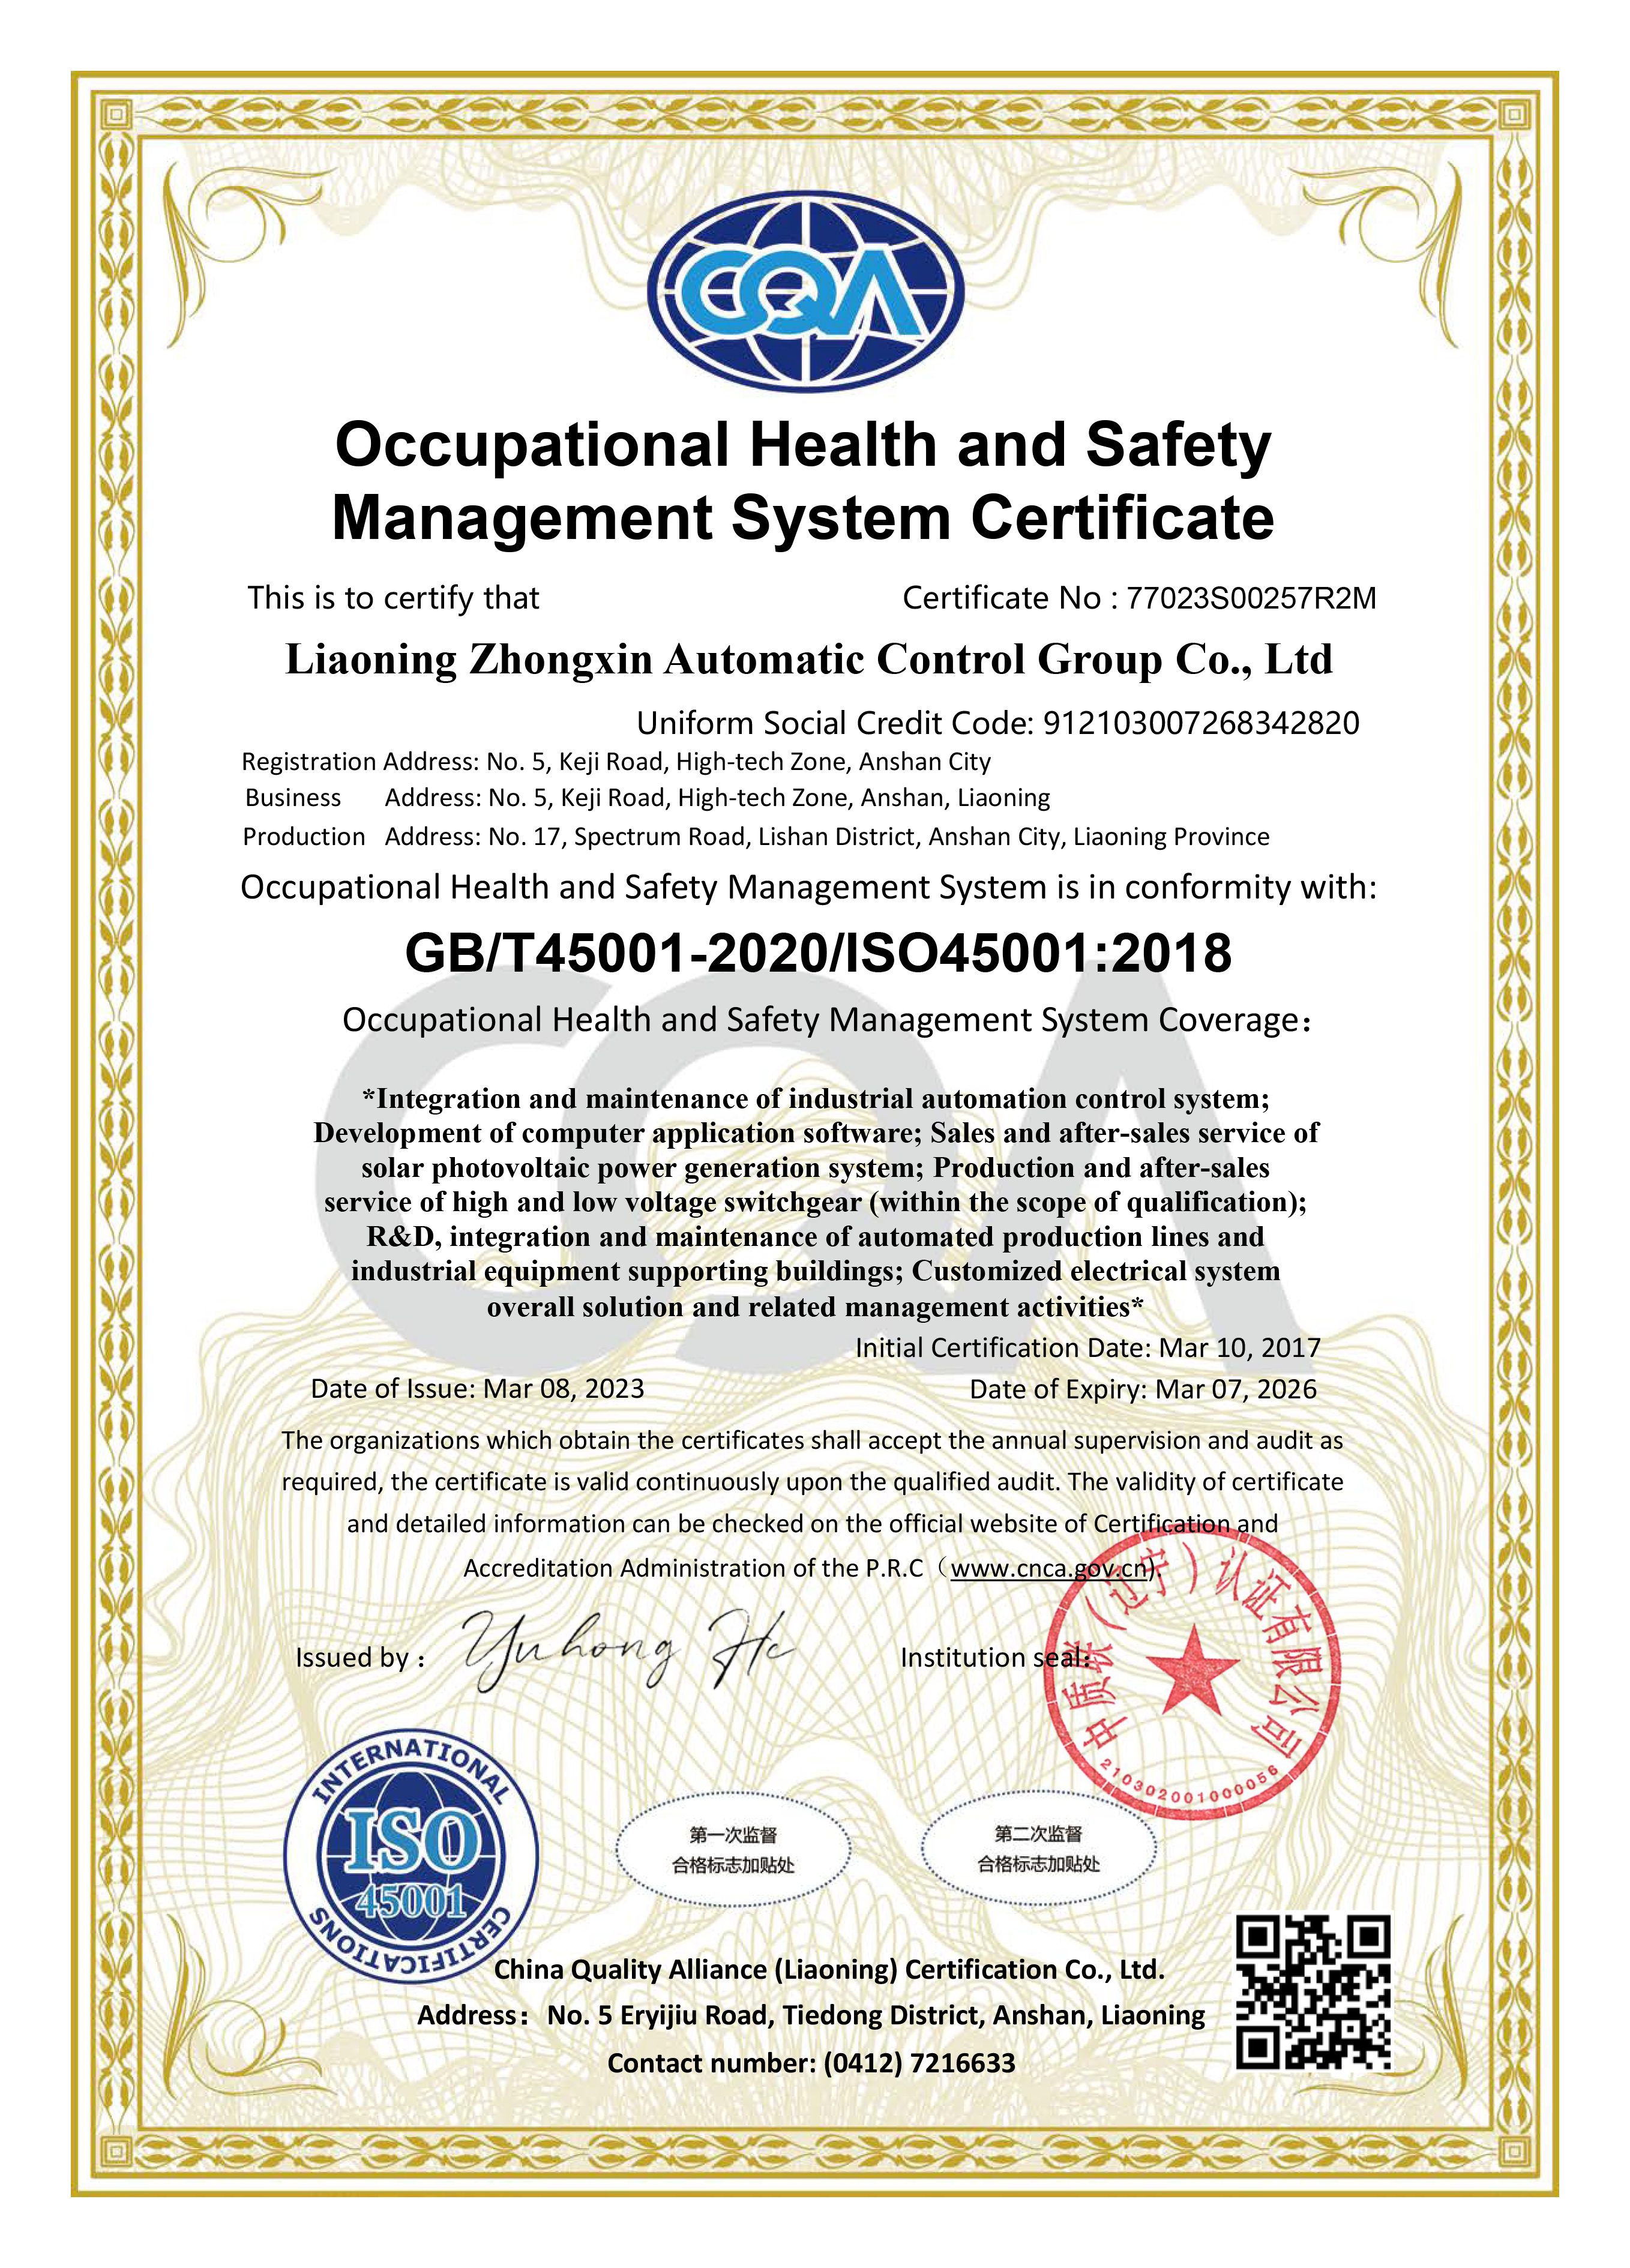 职业健康安全管理体系认证证书-英文-资质证书-辽宁中新